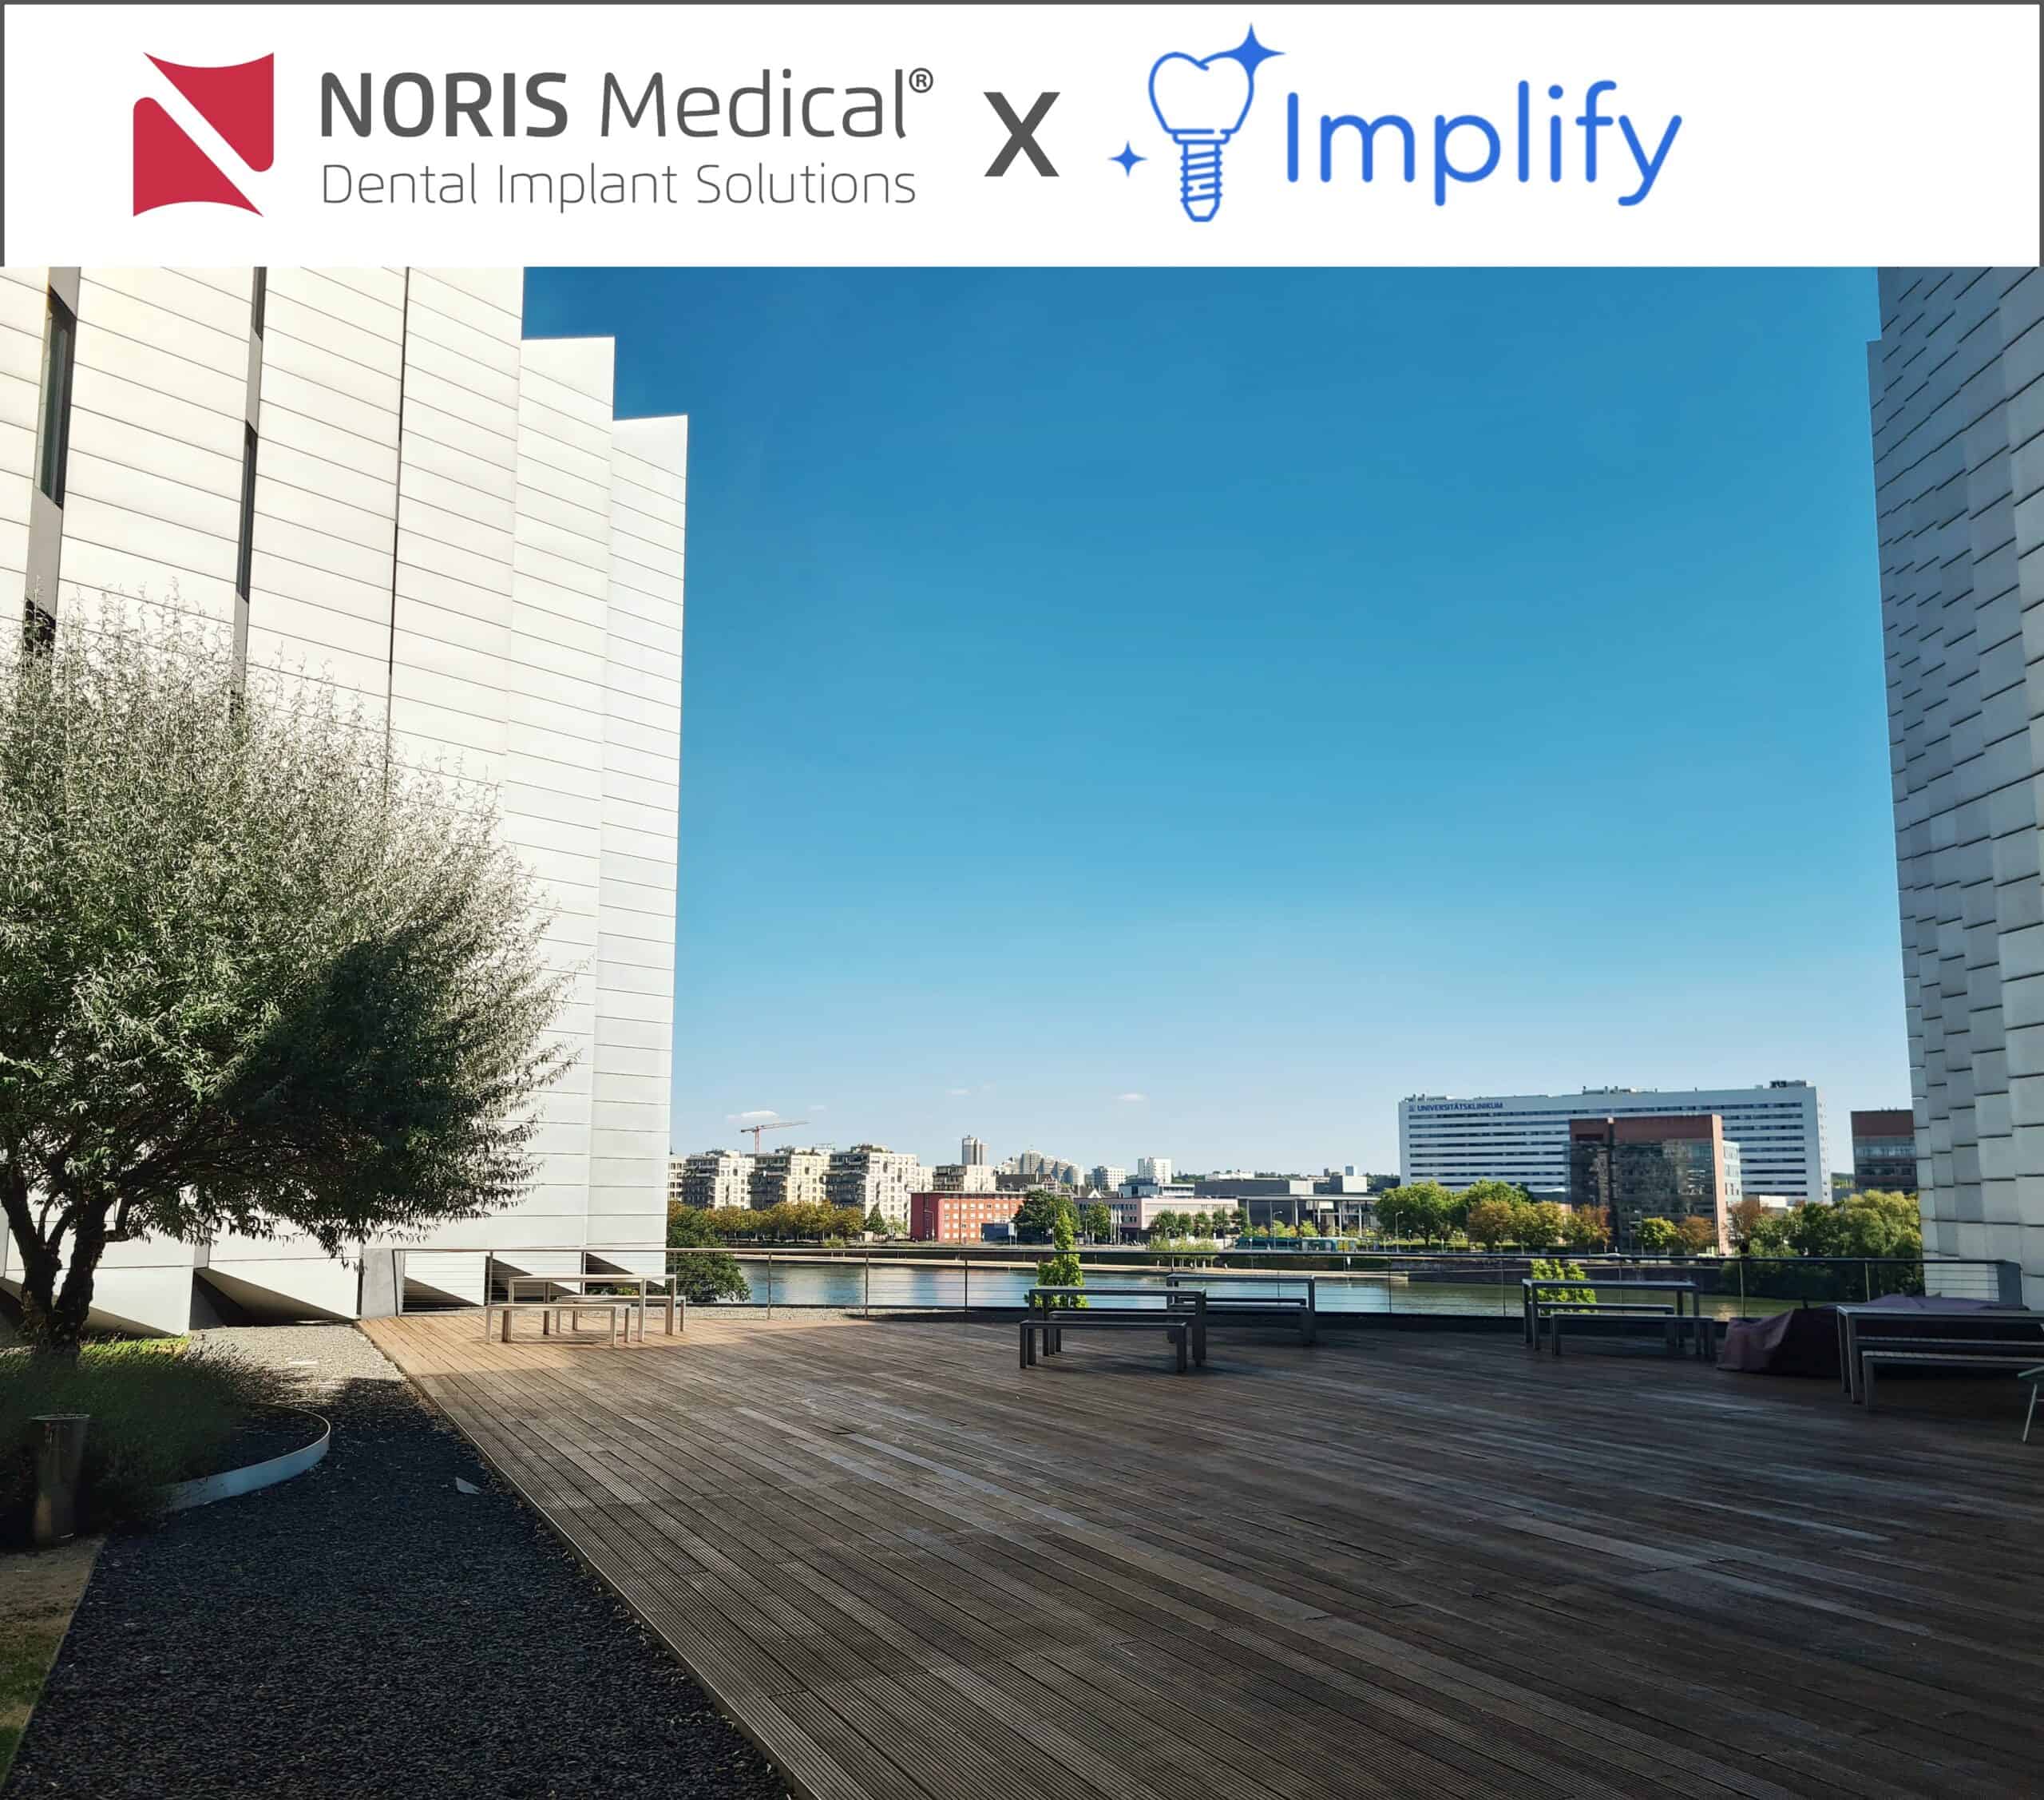 Die Dachterrasse von Implify mit den Logos von Noris Medical und Implify